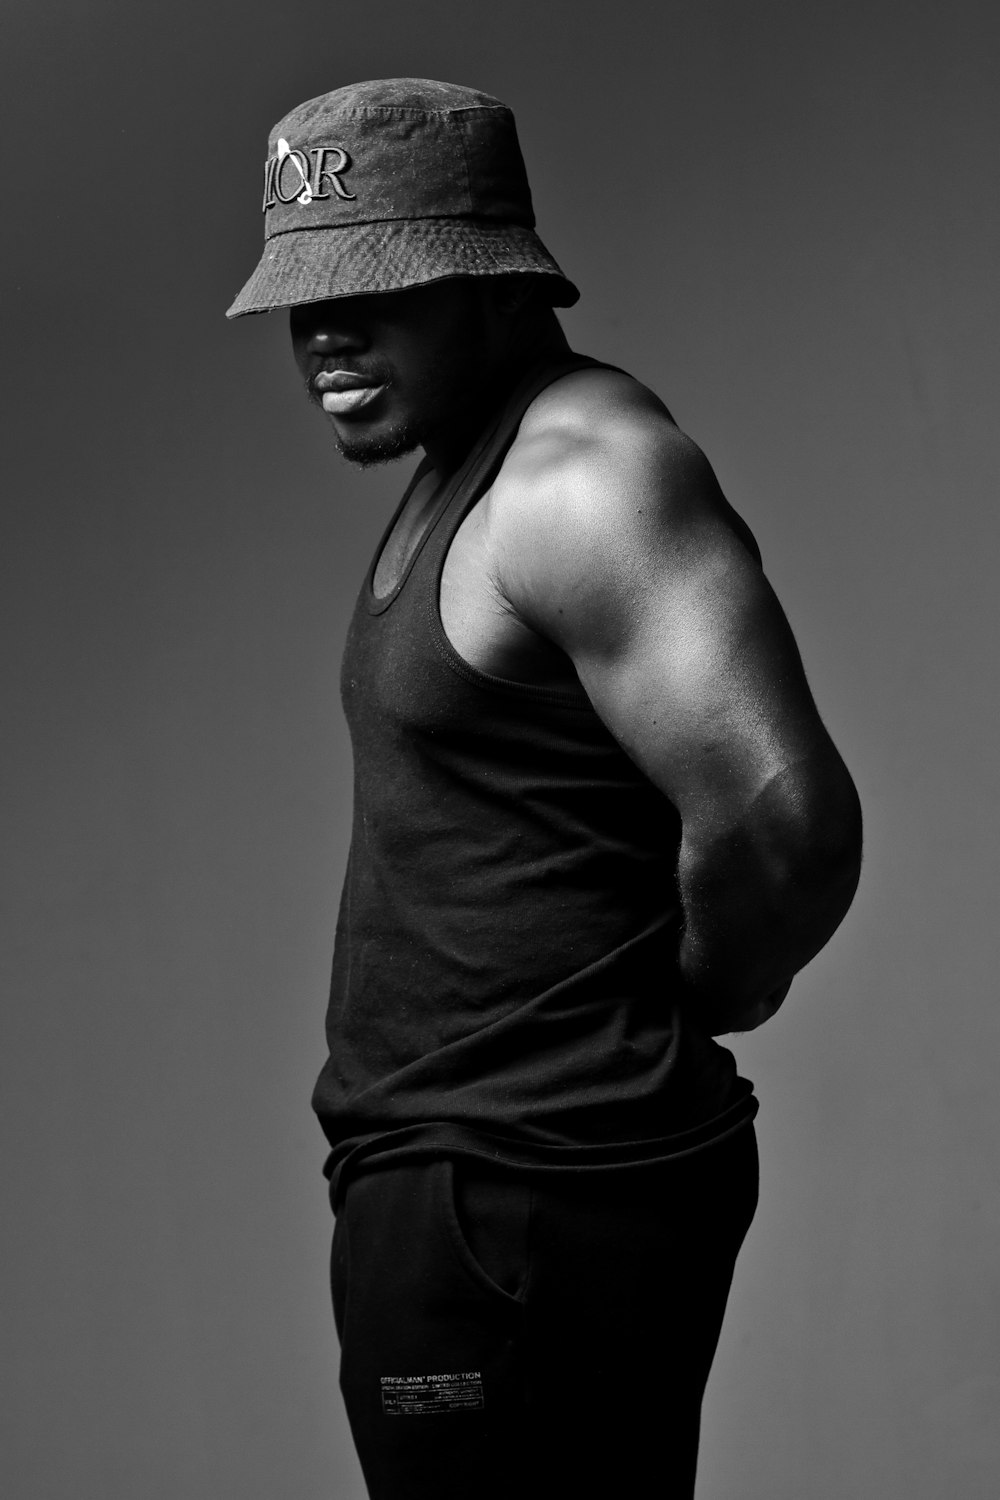 Un hombre con un sombrero parado en una foto en blanco y negro